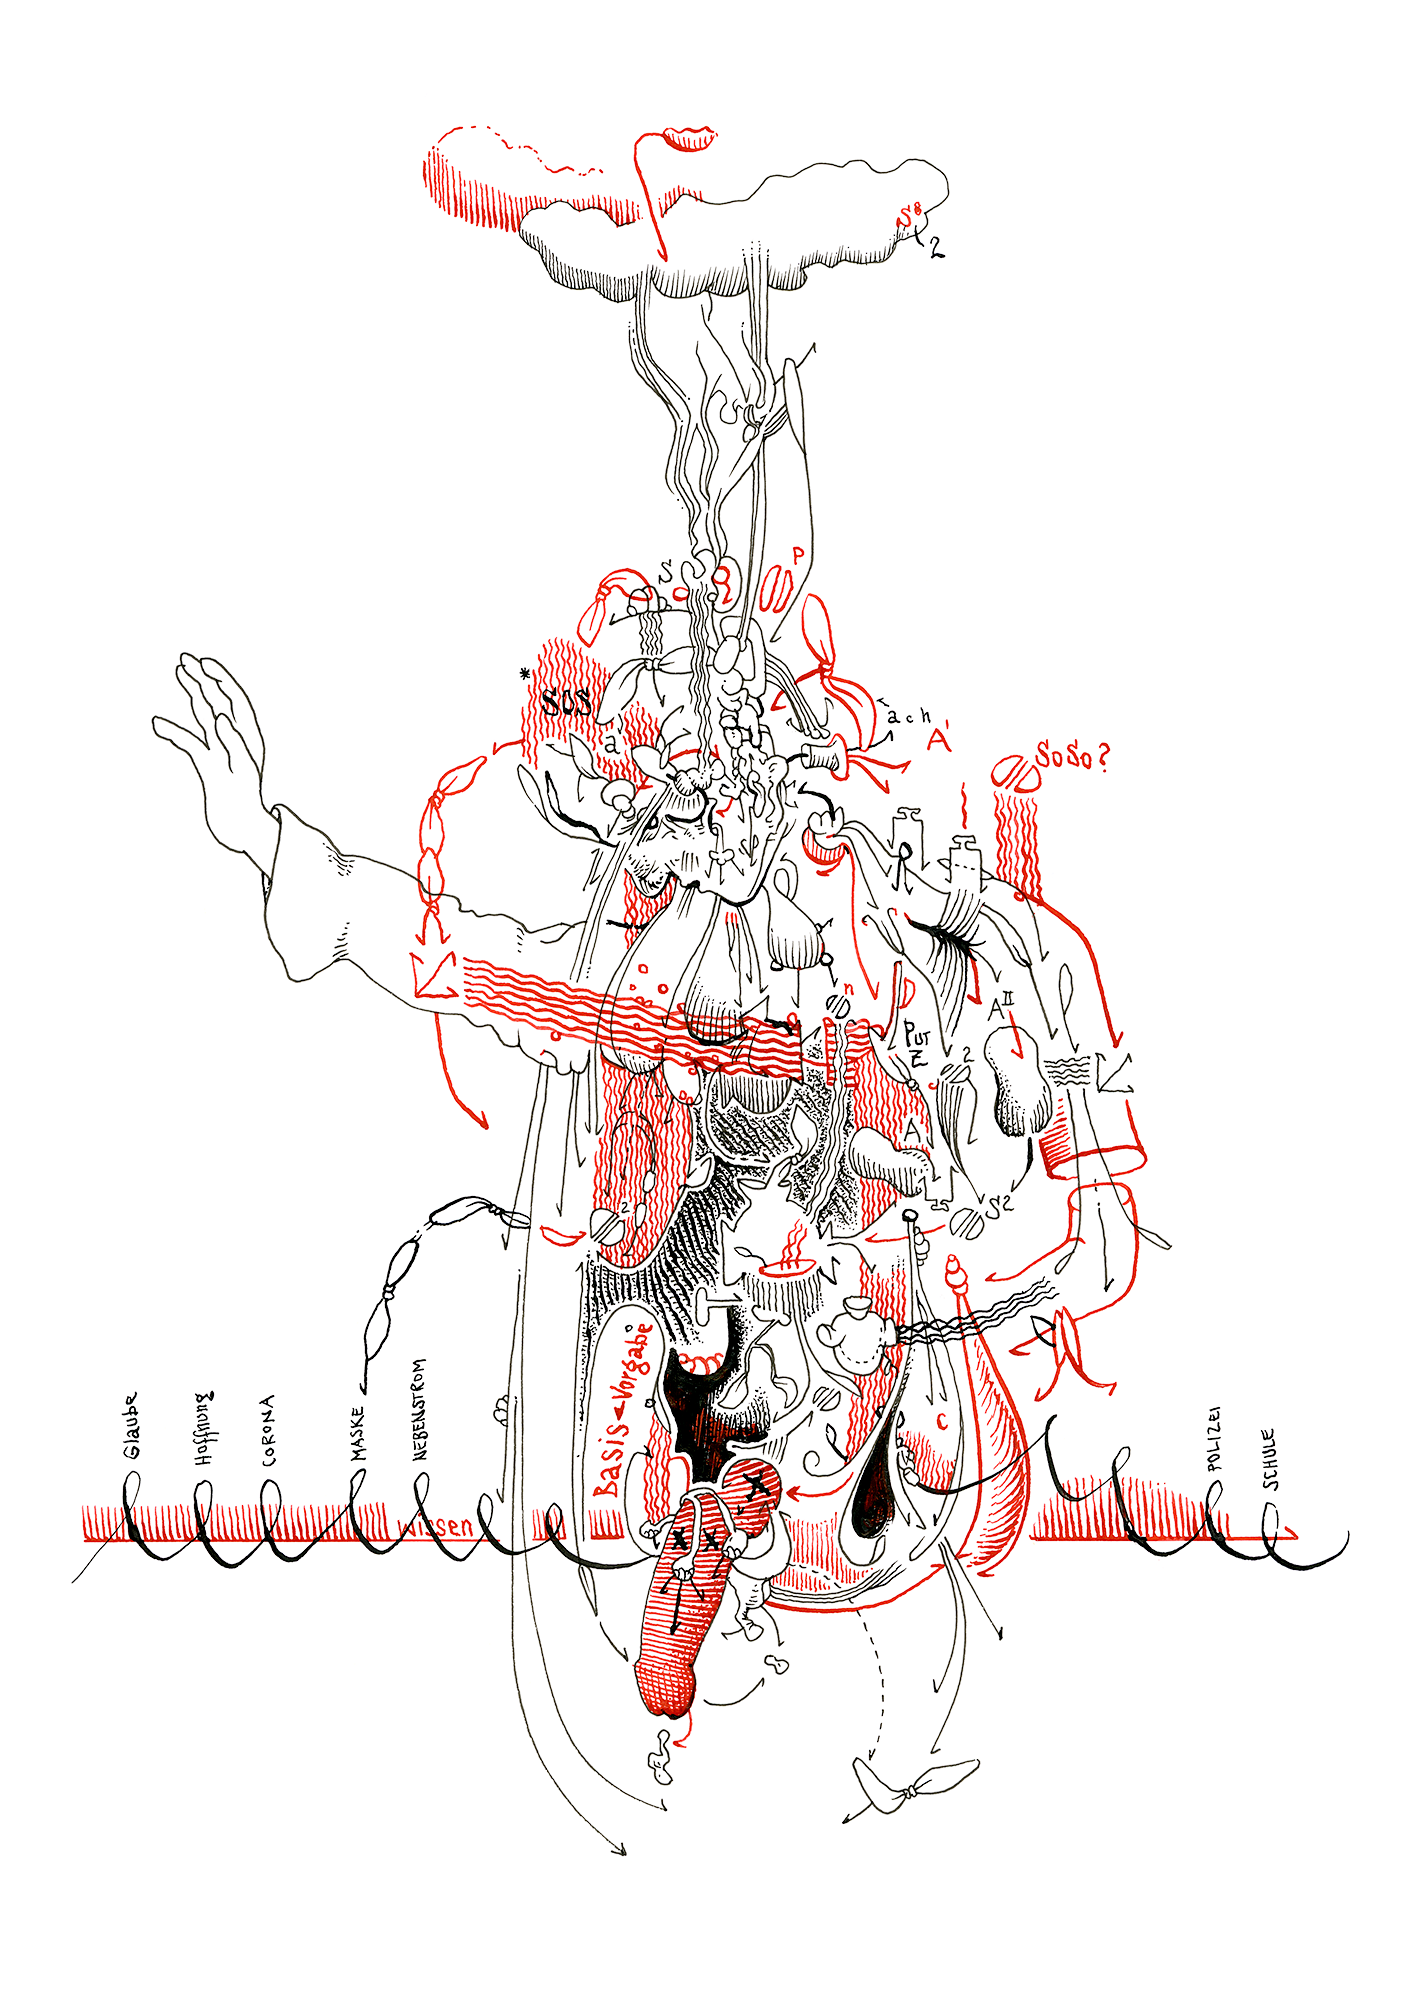 Hannes Kater: Tageszeichnung (Zeichnung/drawing) vom 16.12.2020 (1414 x 2000 Pixel)